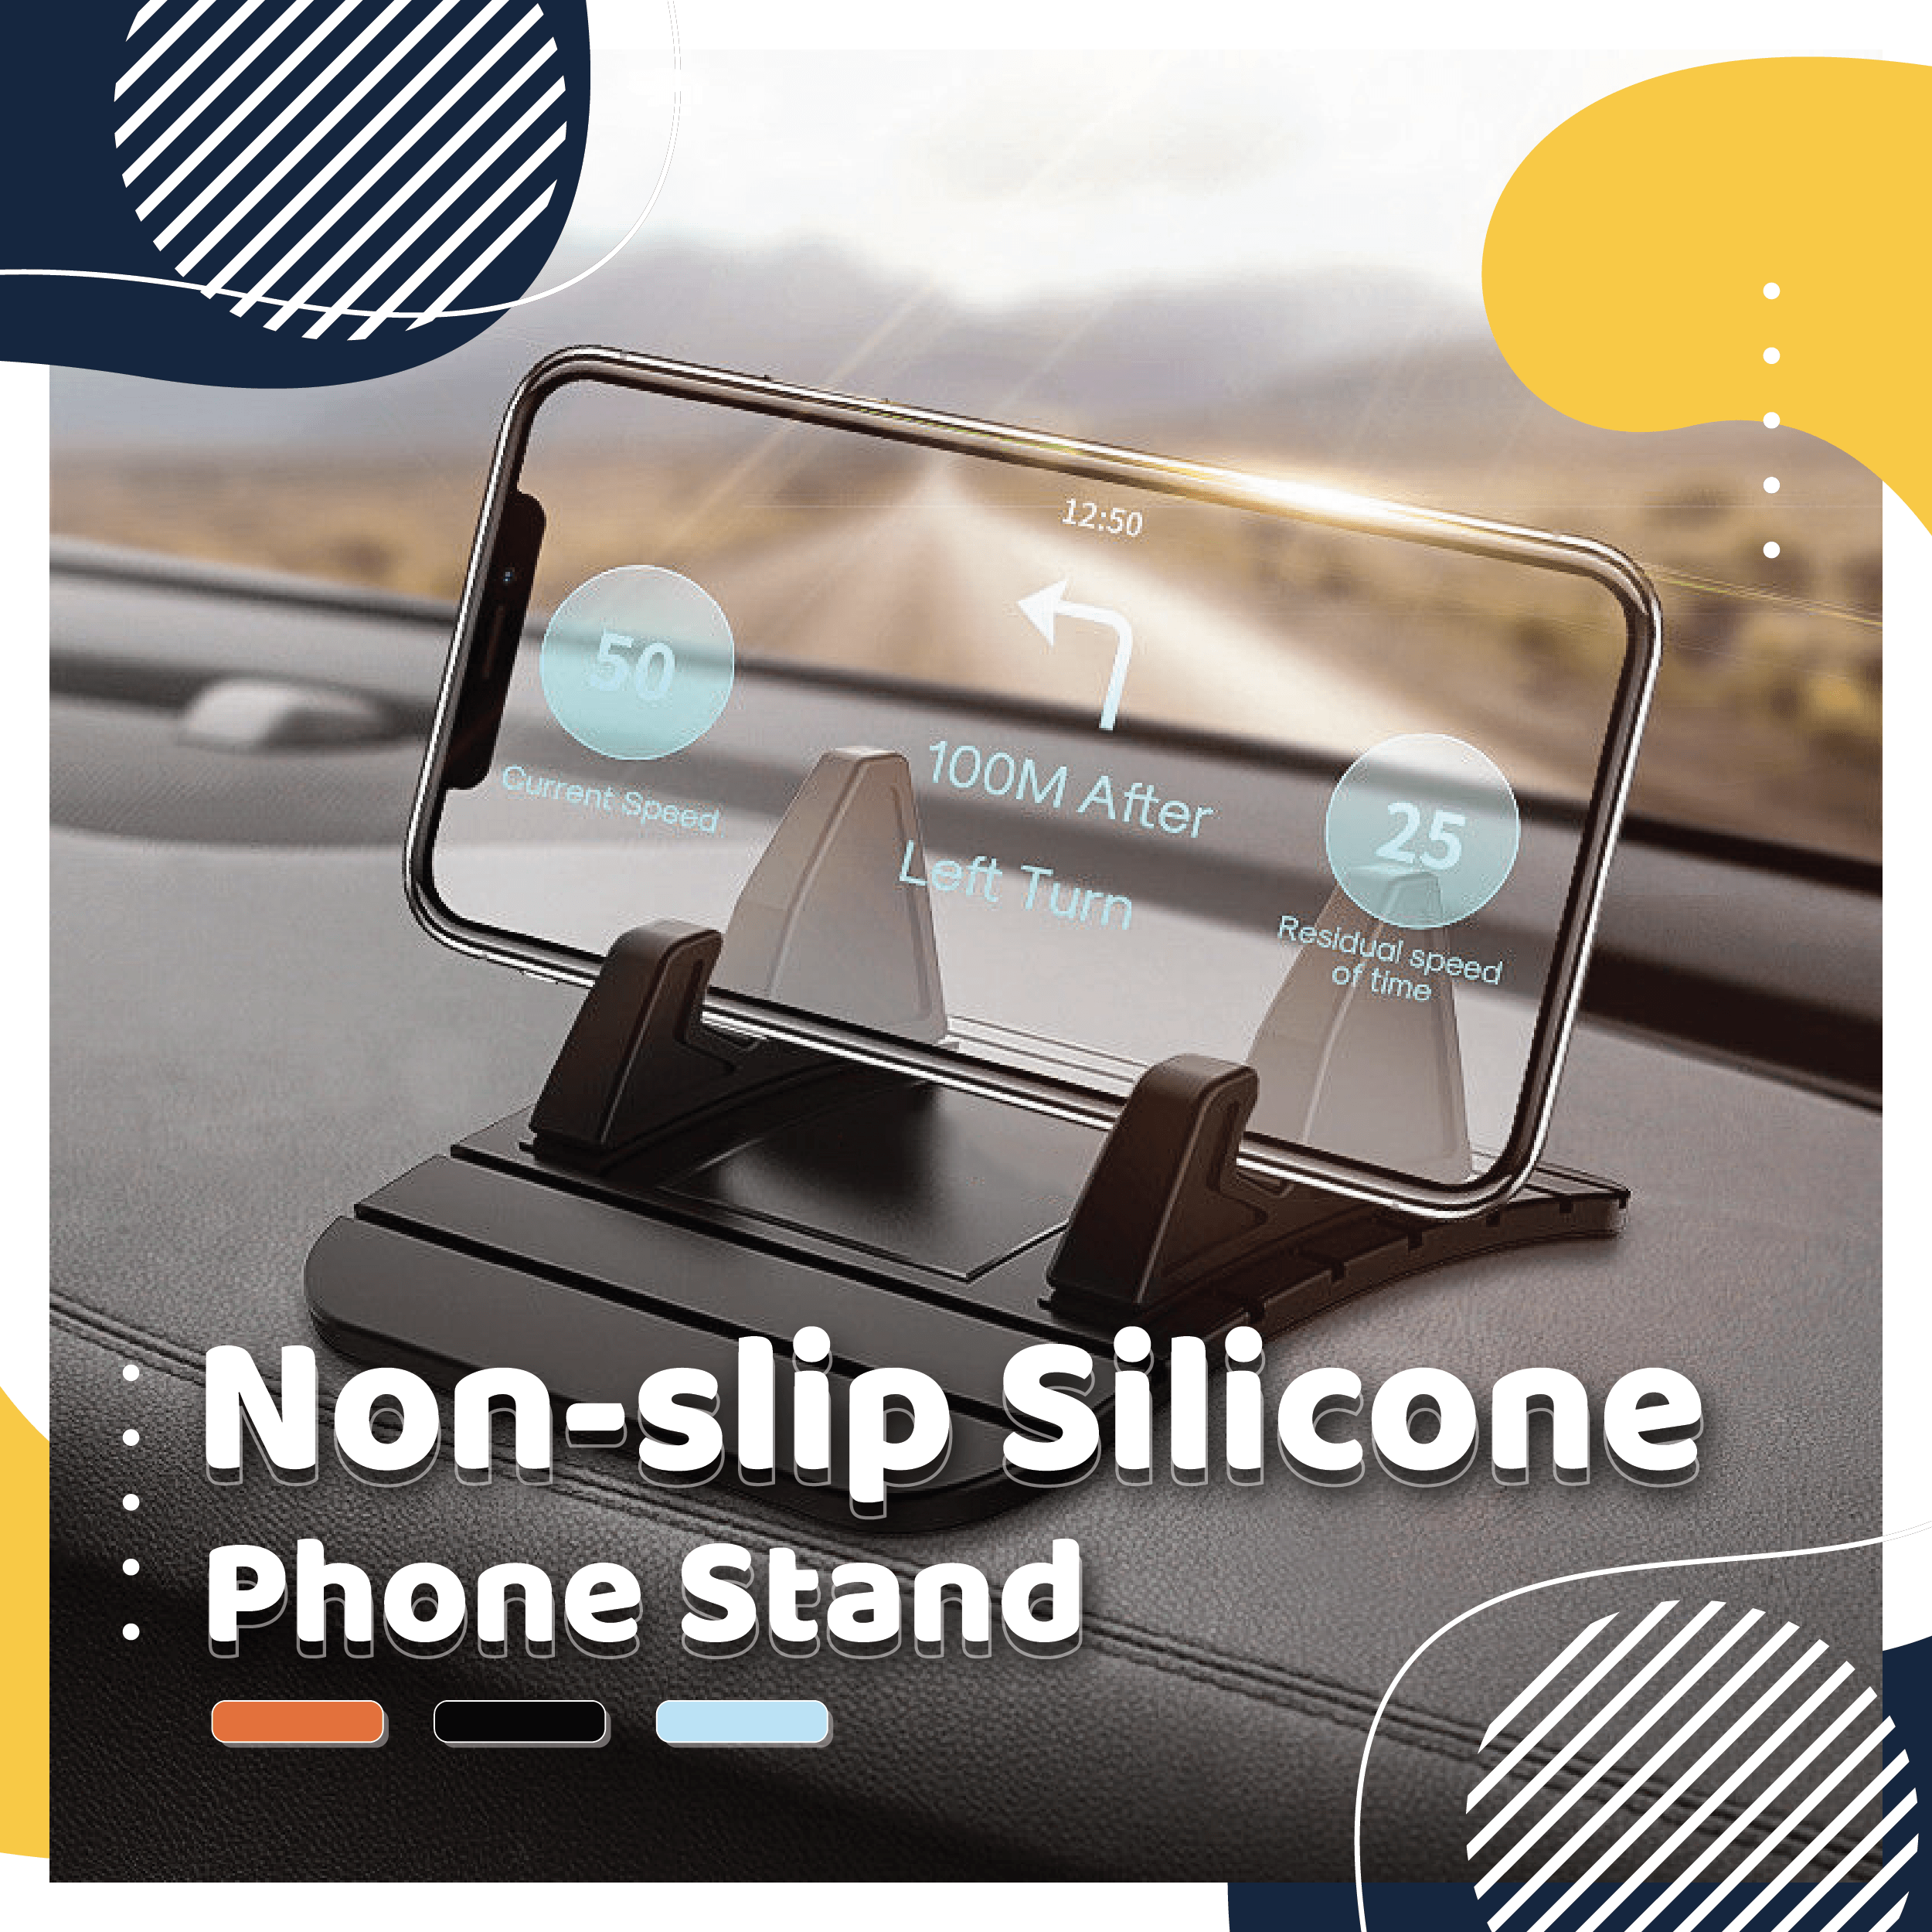 Non-slip Silicone Phone Stand